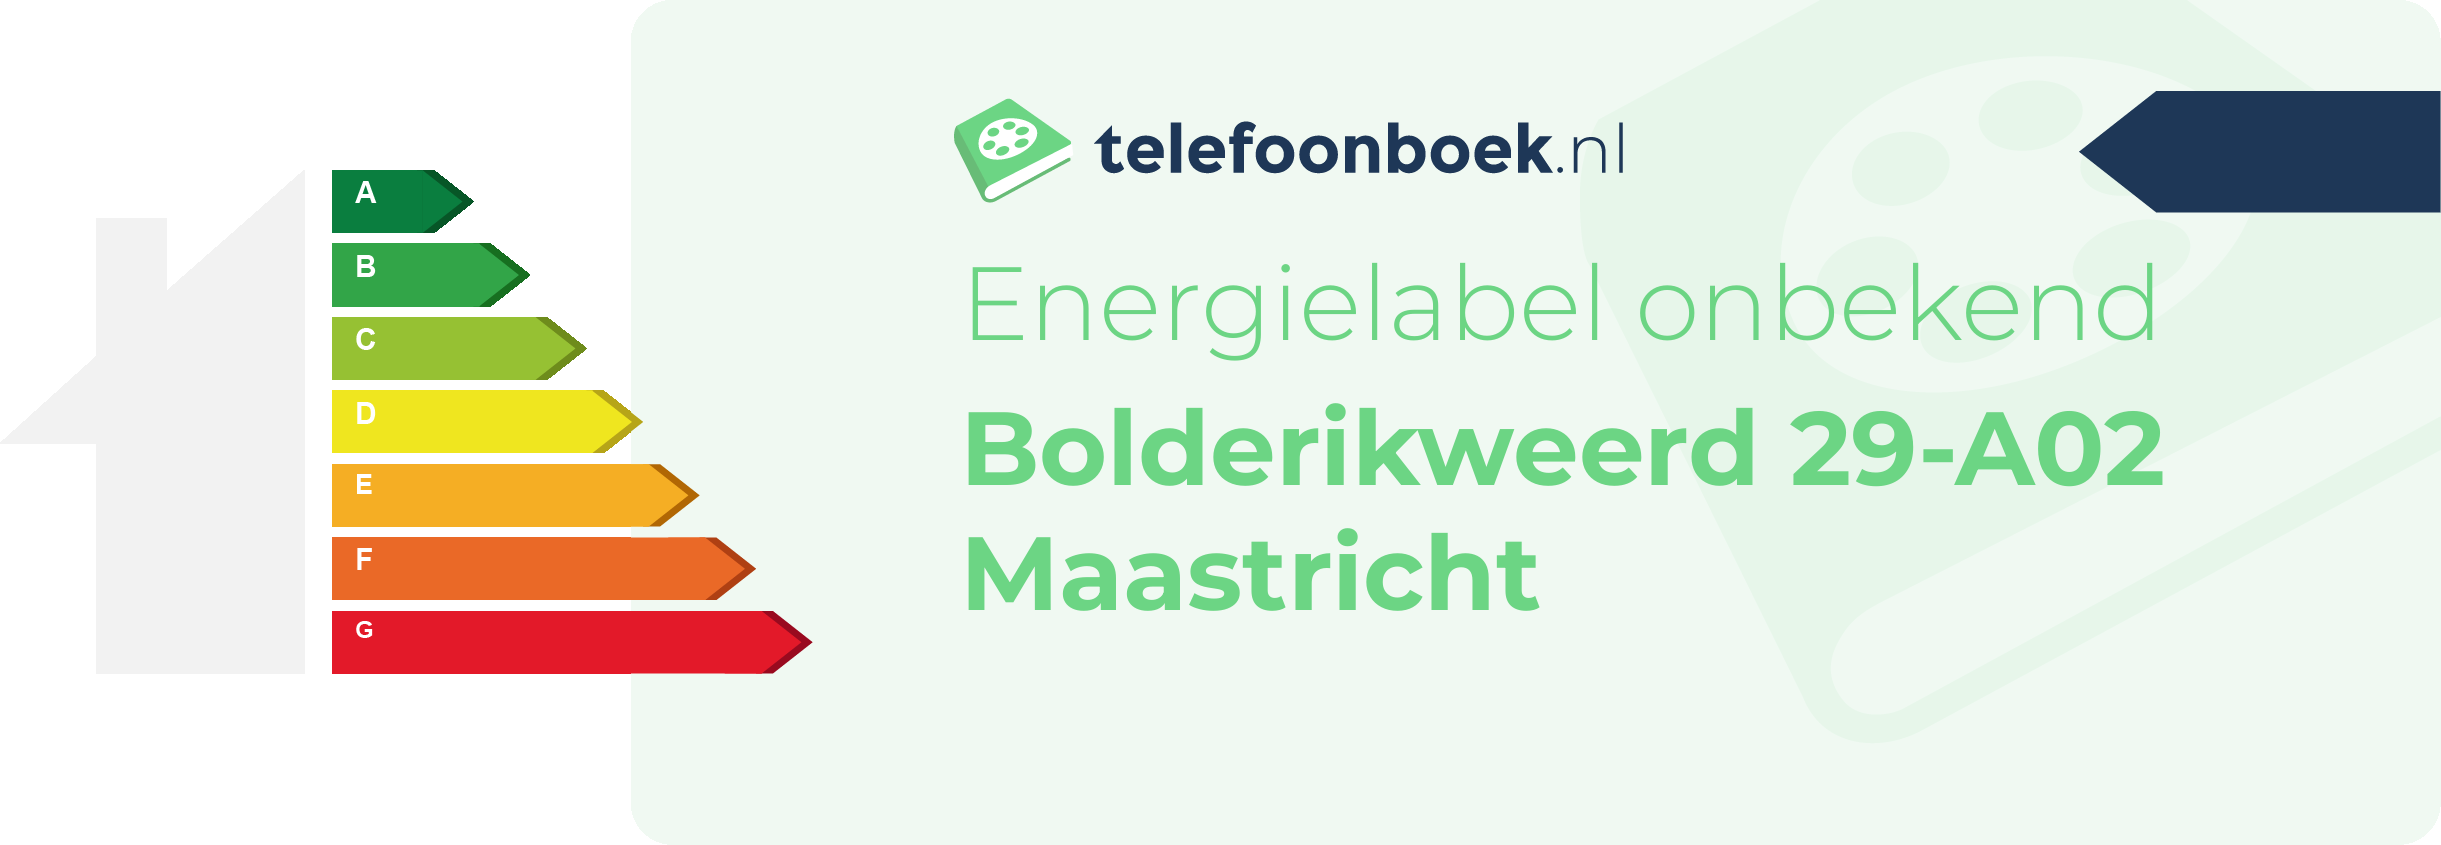 Energielabel Bolderikweerd 29-A02 Maastricht